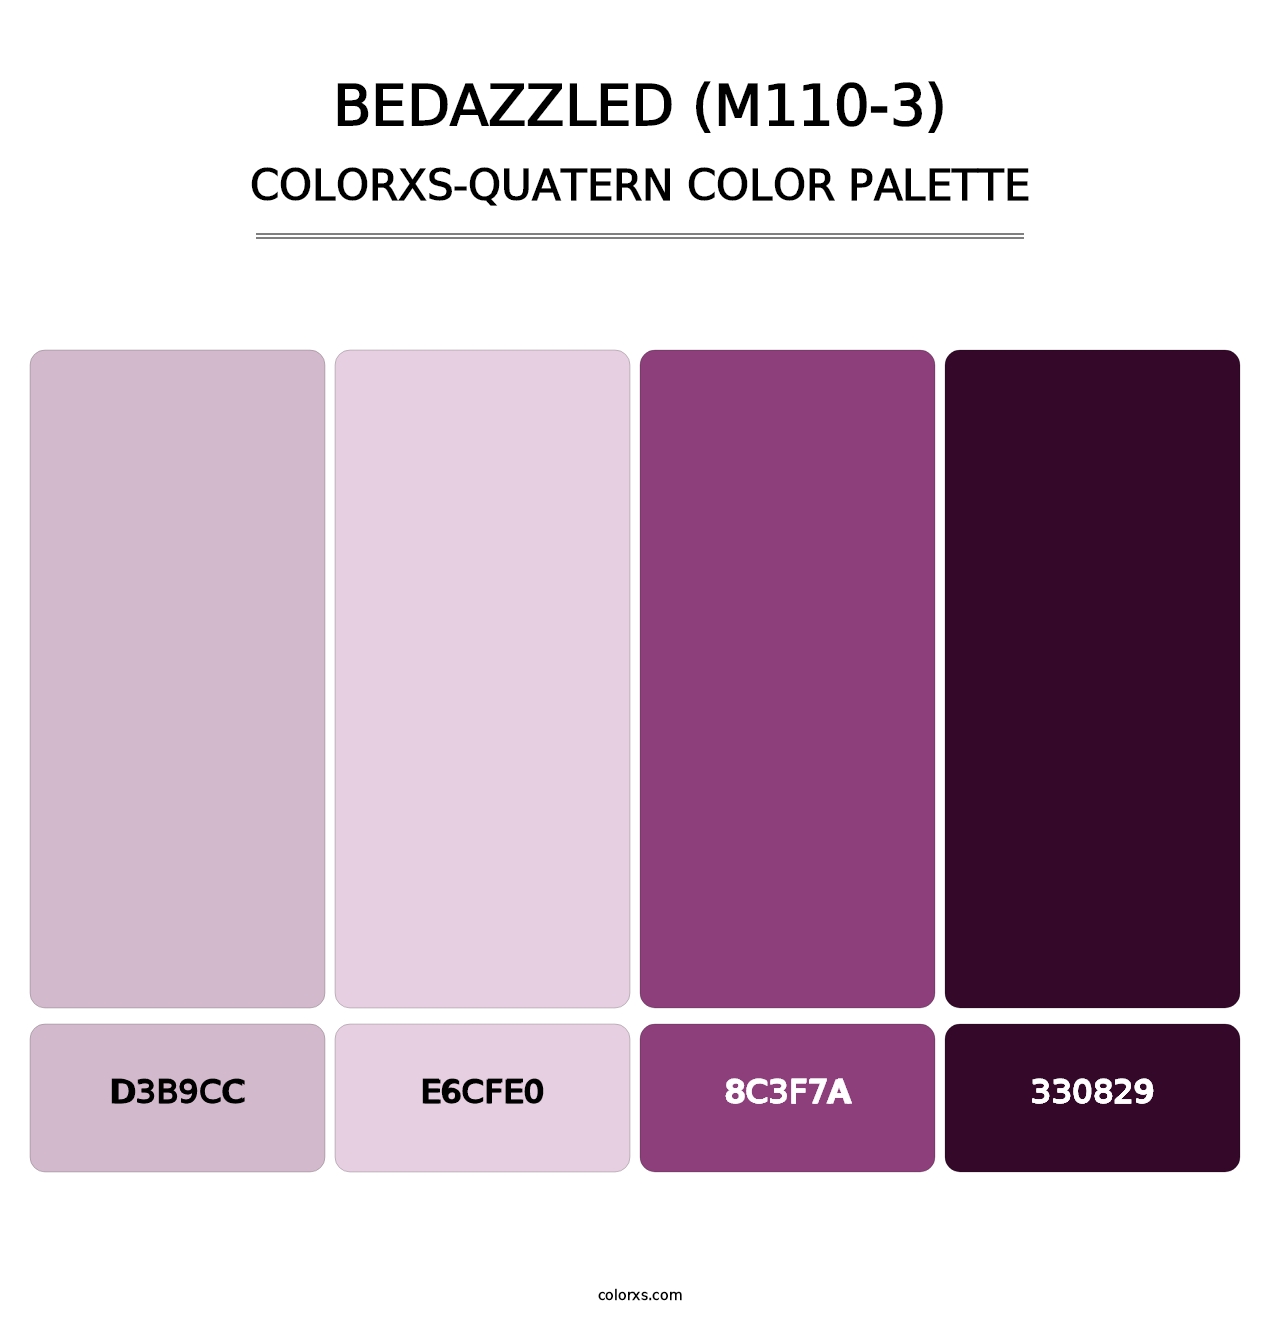 Bedazzled (M110-3) - Colorxs Quatern Palette